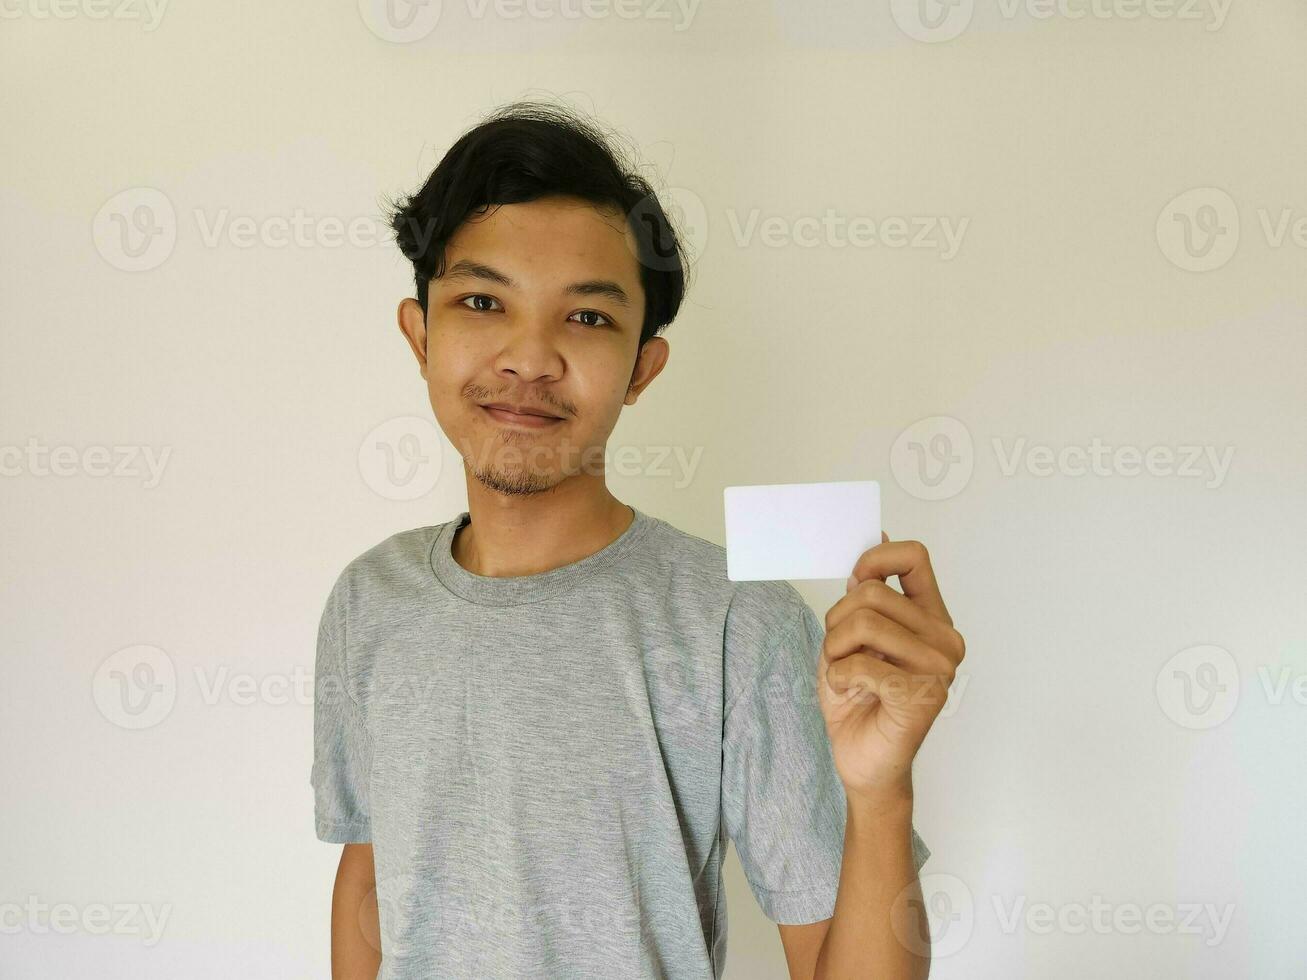 content marrant visage asiatique homme spectacle de le sien vide carte sur blanc Contexte photo